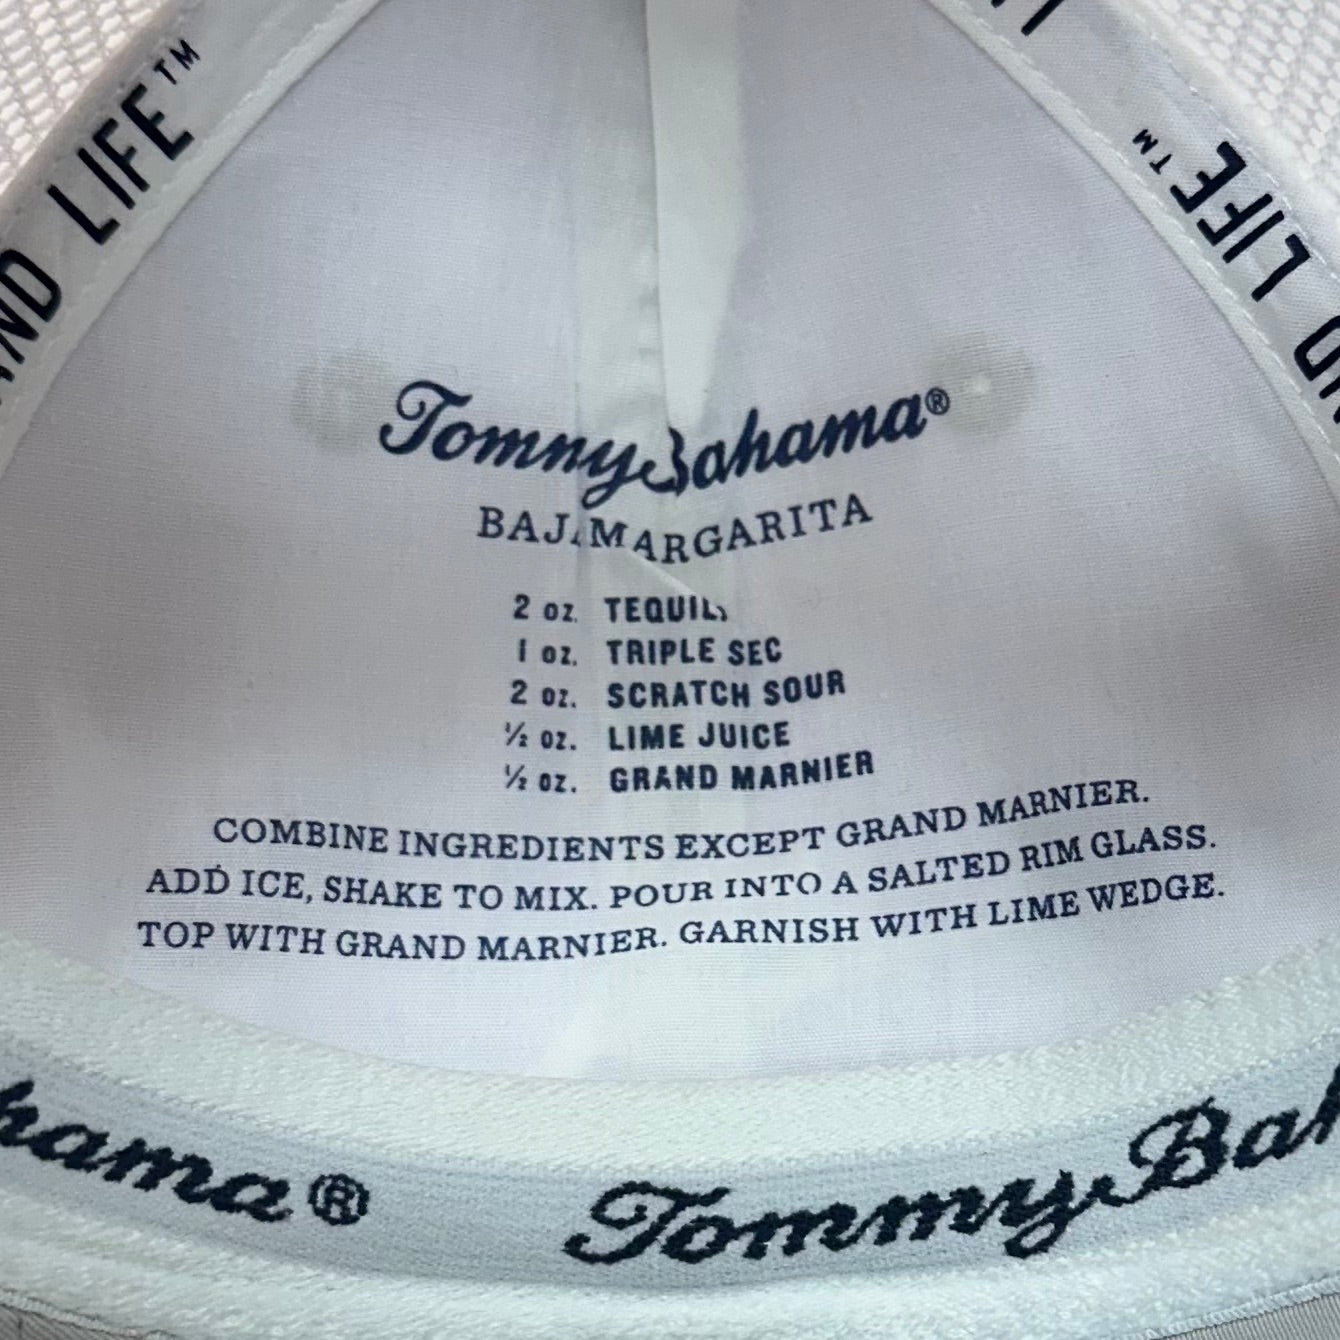 Gorra Tommy Bahama🦈 color gris y blanco con logotipo en color blanco